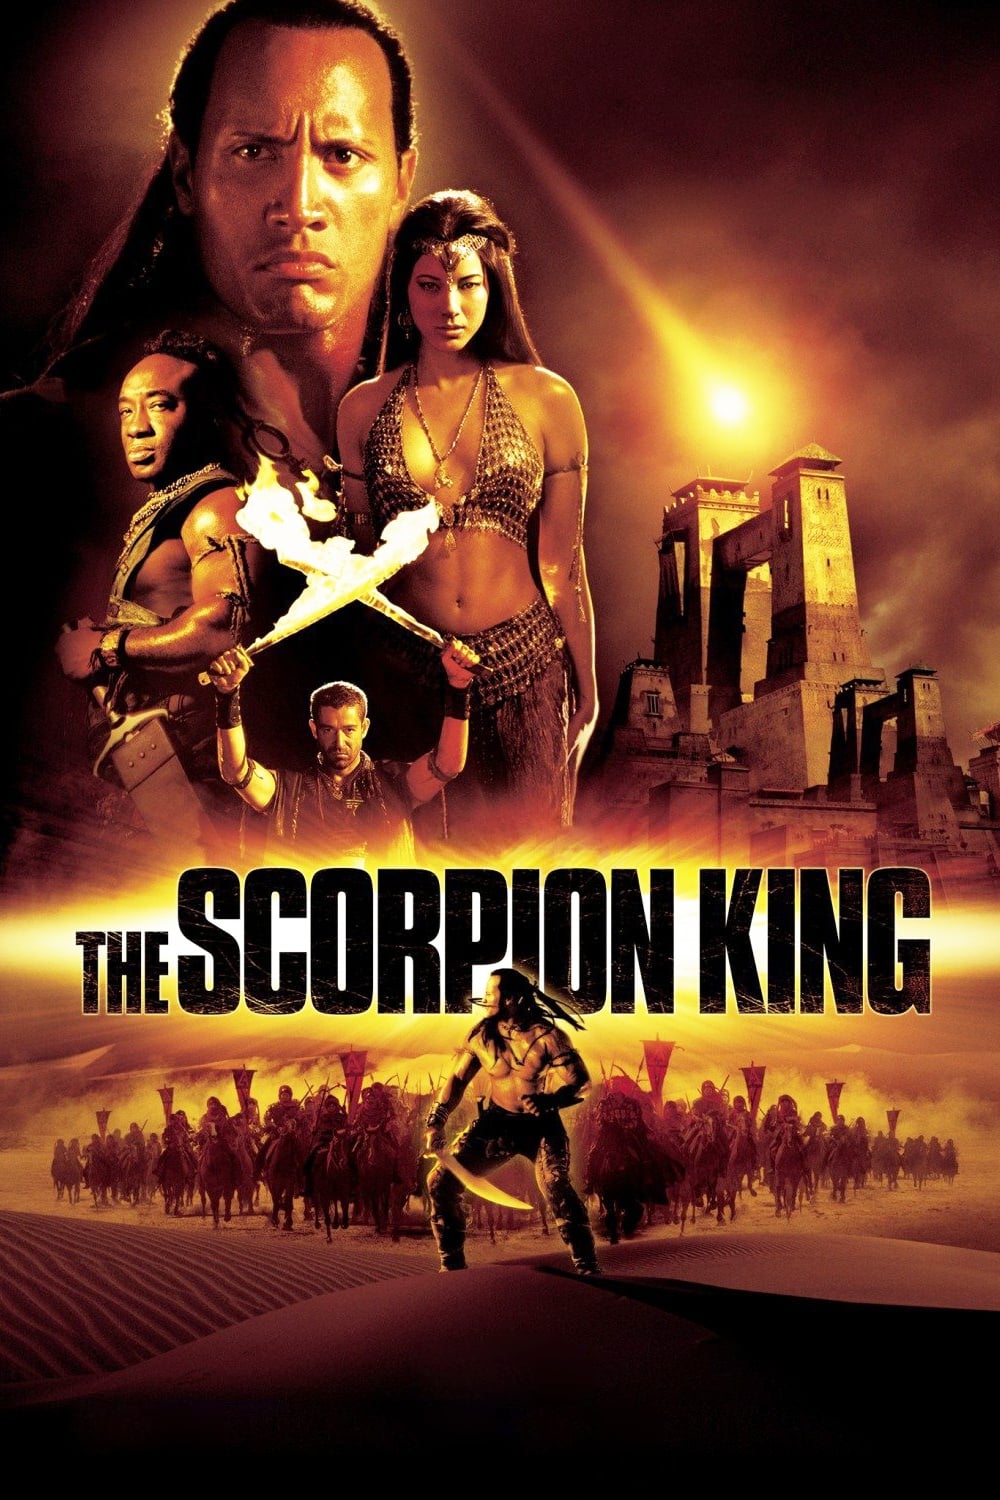 El rey Escorpión (2002)